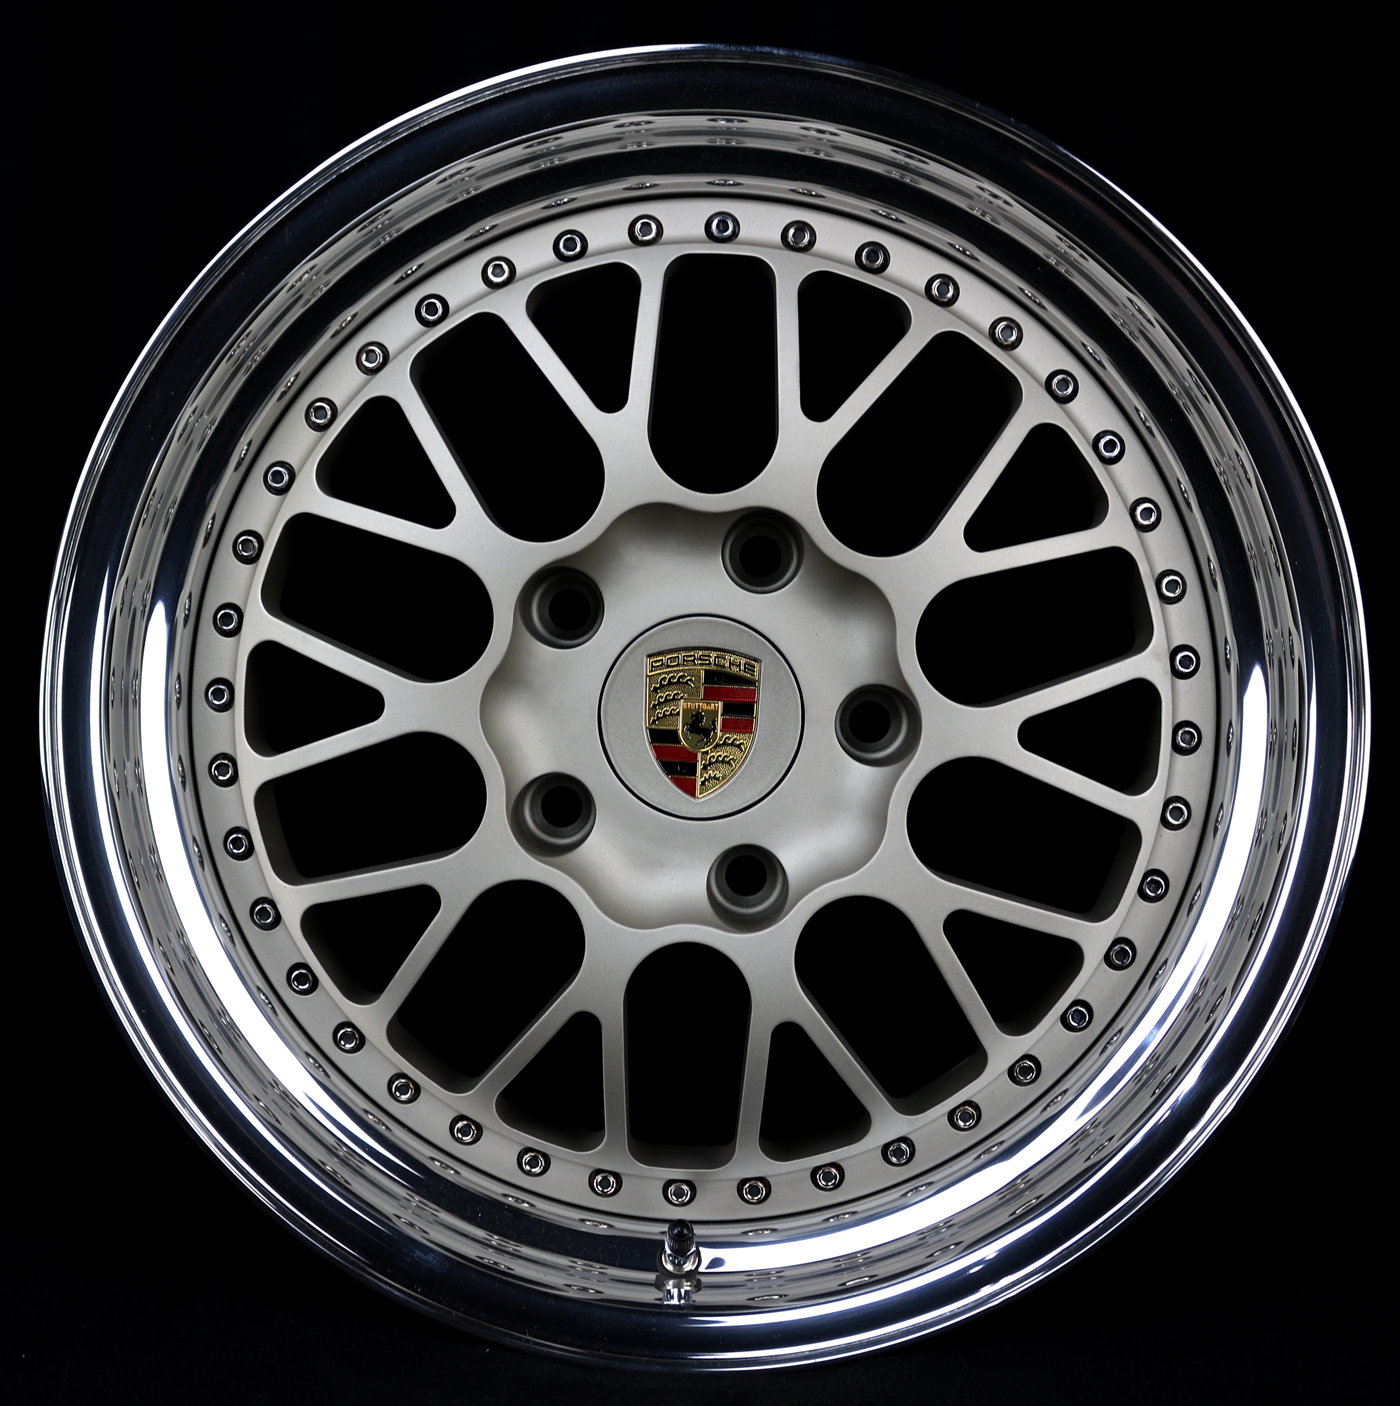 Porsche sport design wheels 18 in unique color as Kinesis Rennlist